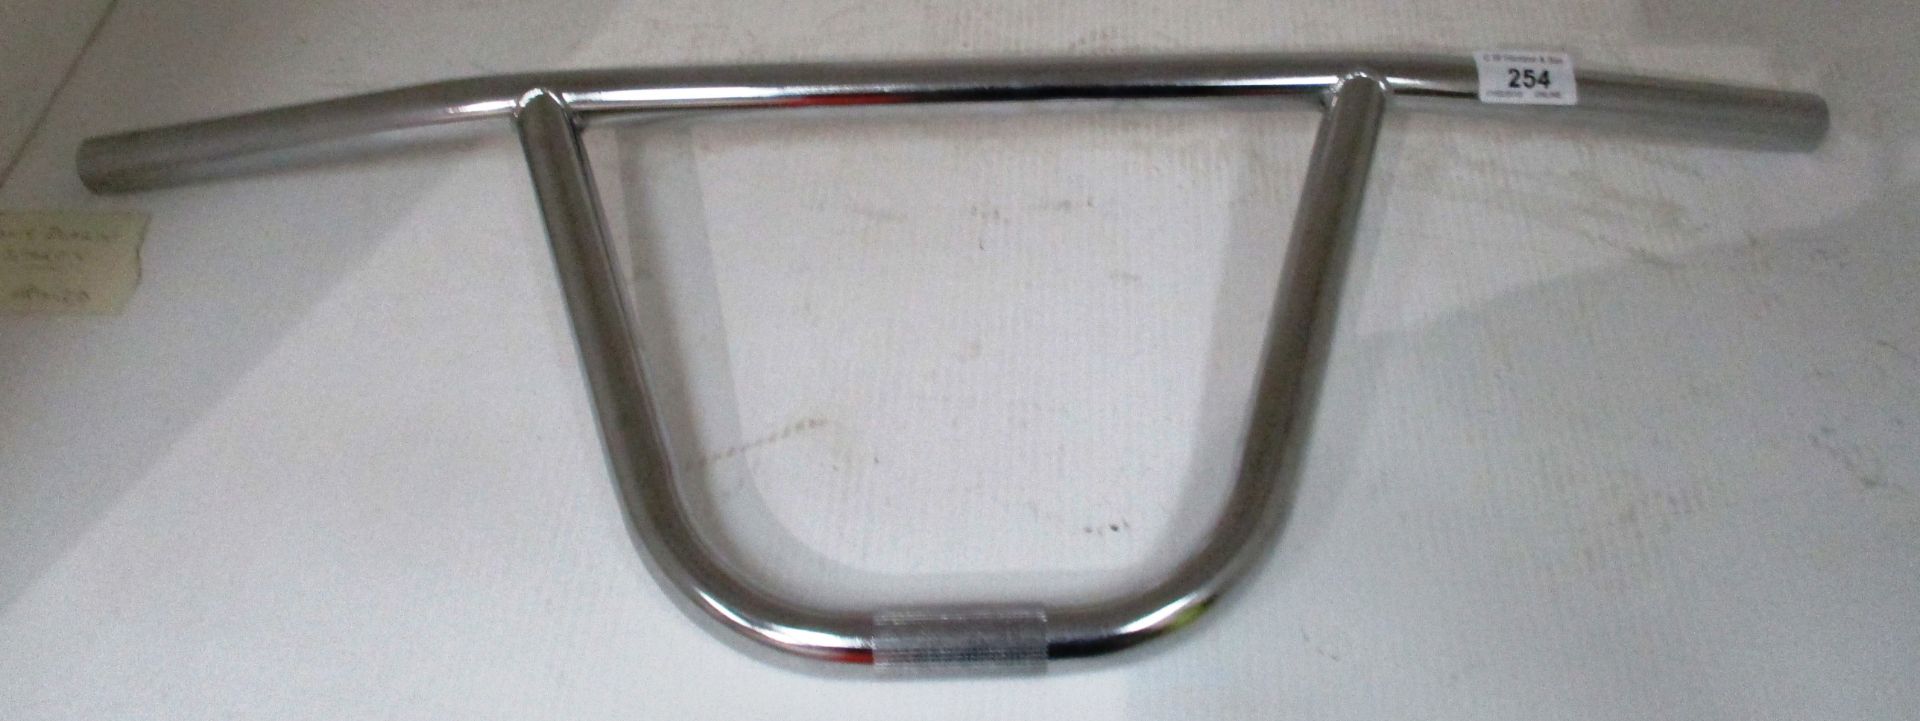 A chrome BMX handle bar